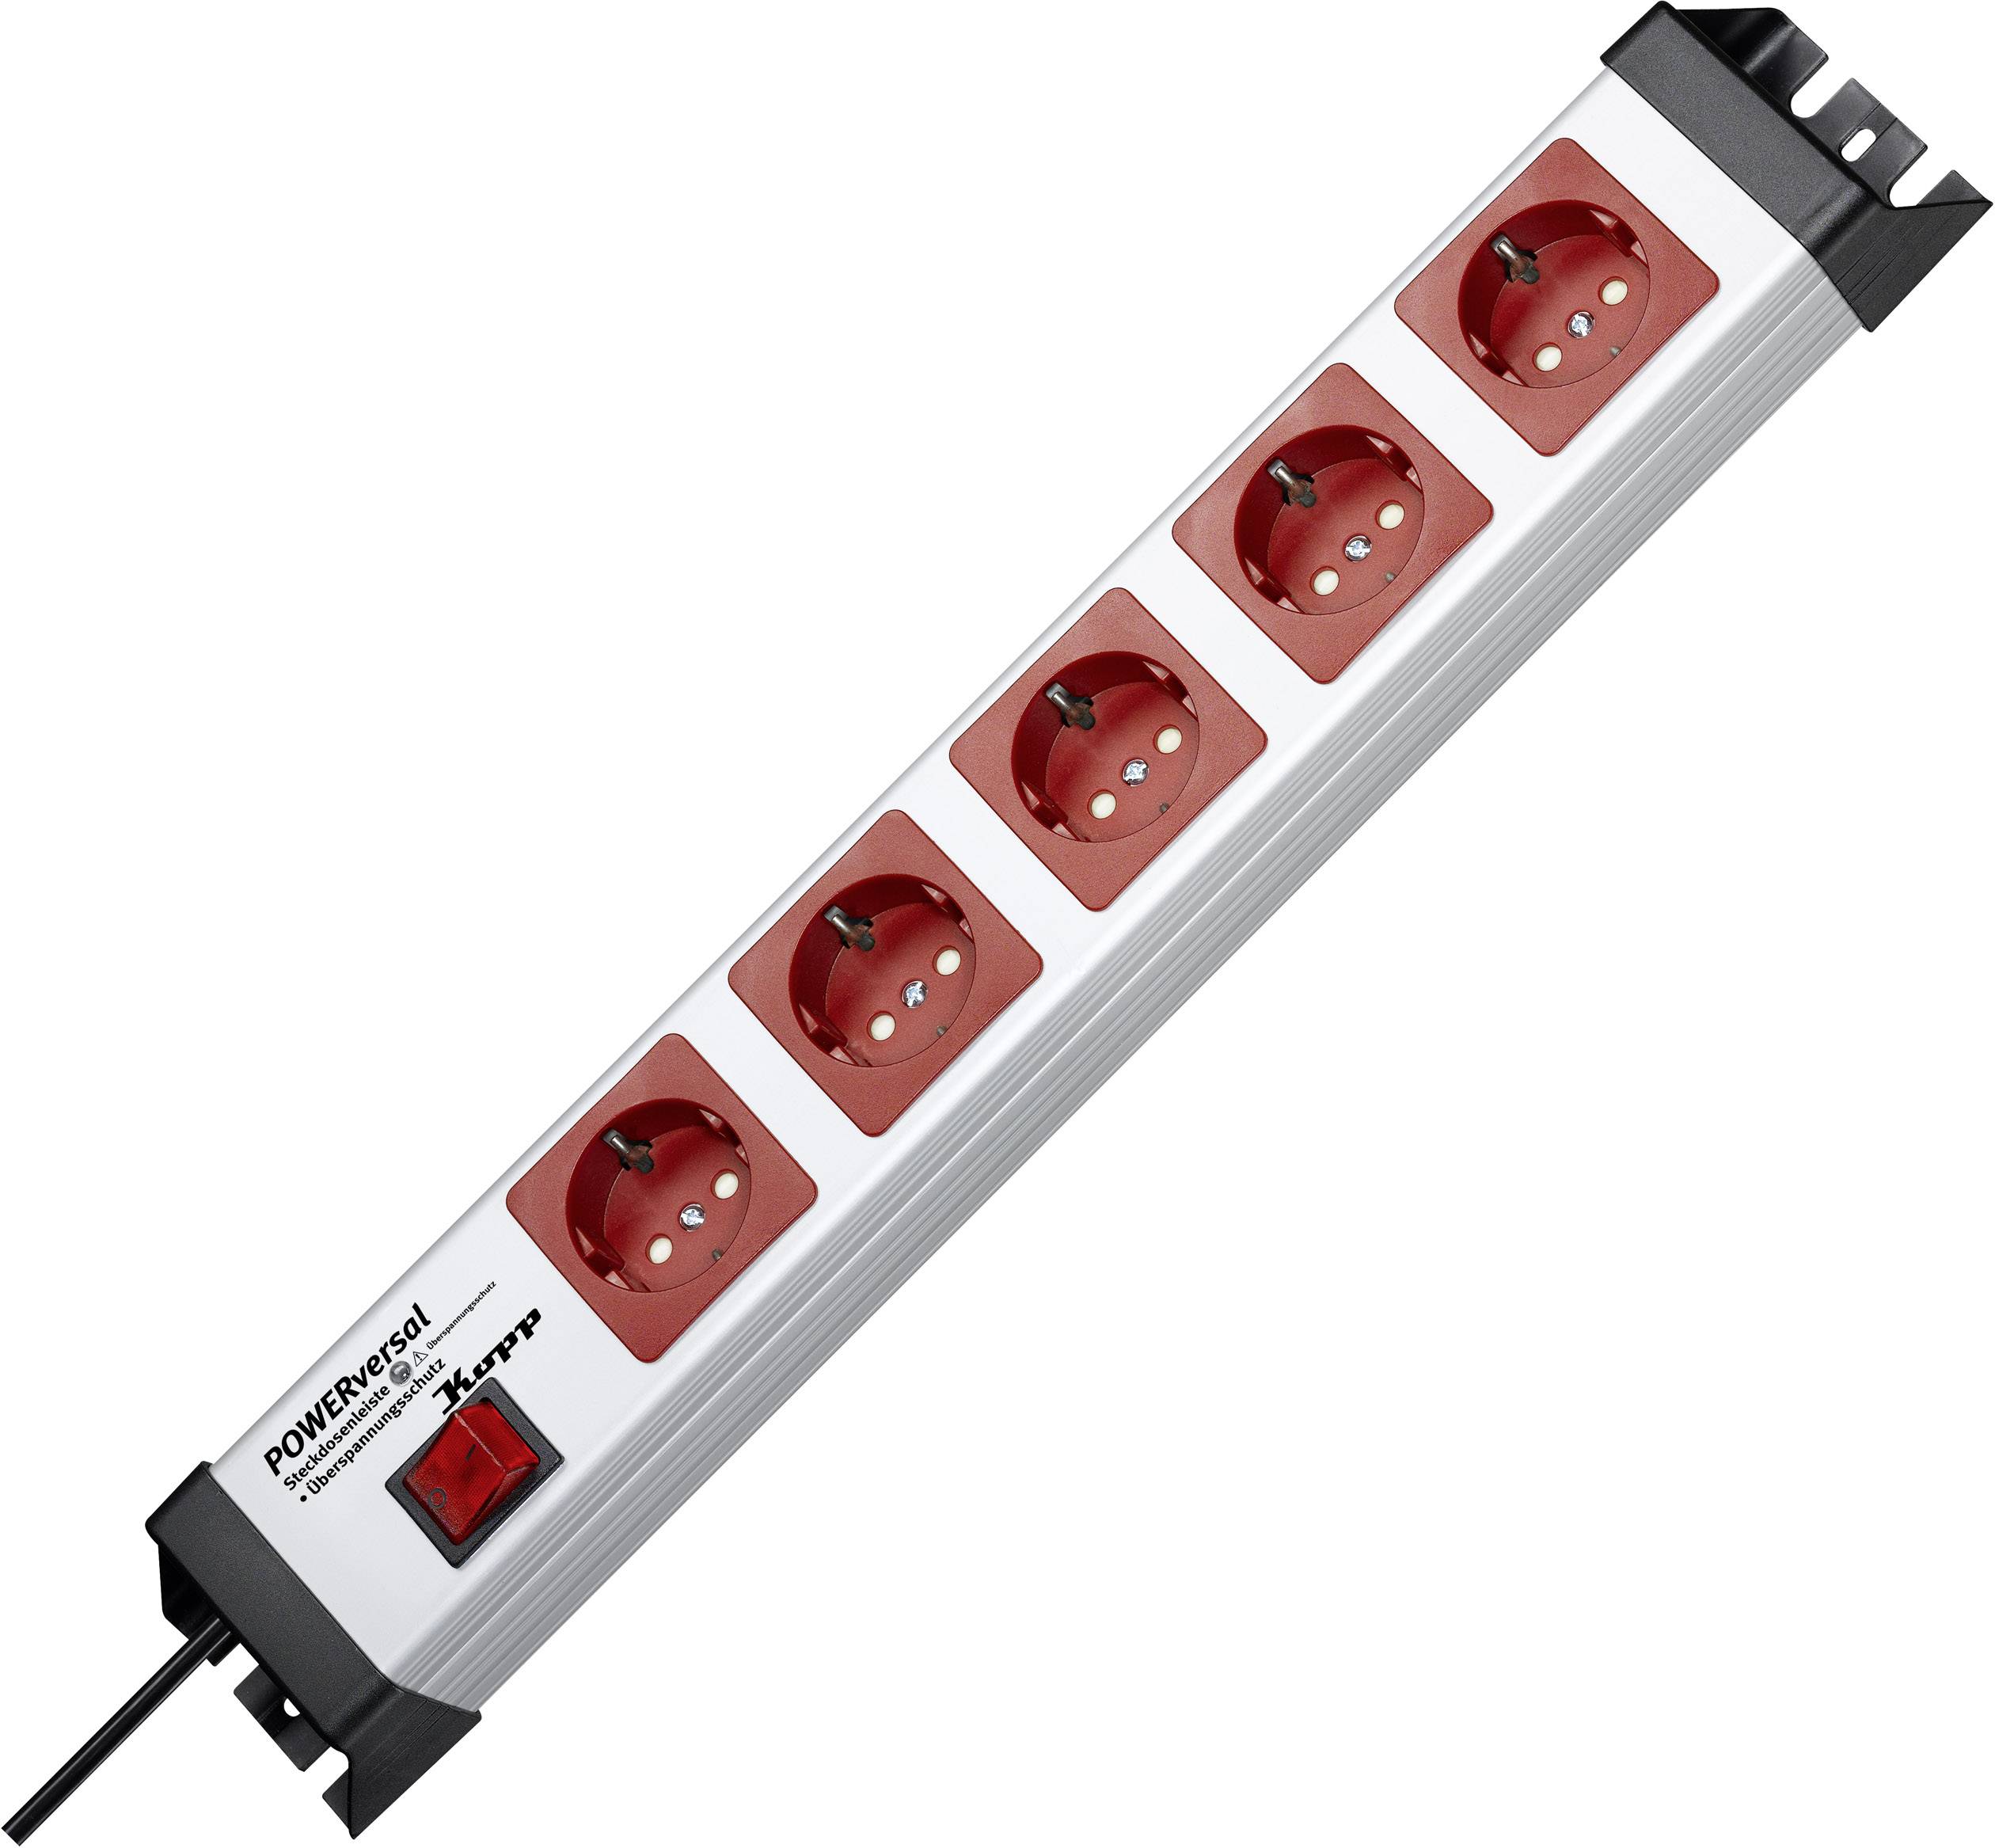 Steckdosenleiste mit ÜSS, rot/grau, 5-fach, 5xSchuko, mit Schalter, 1,4m Zuleitung